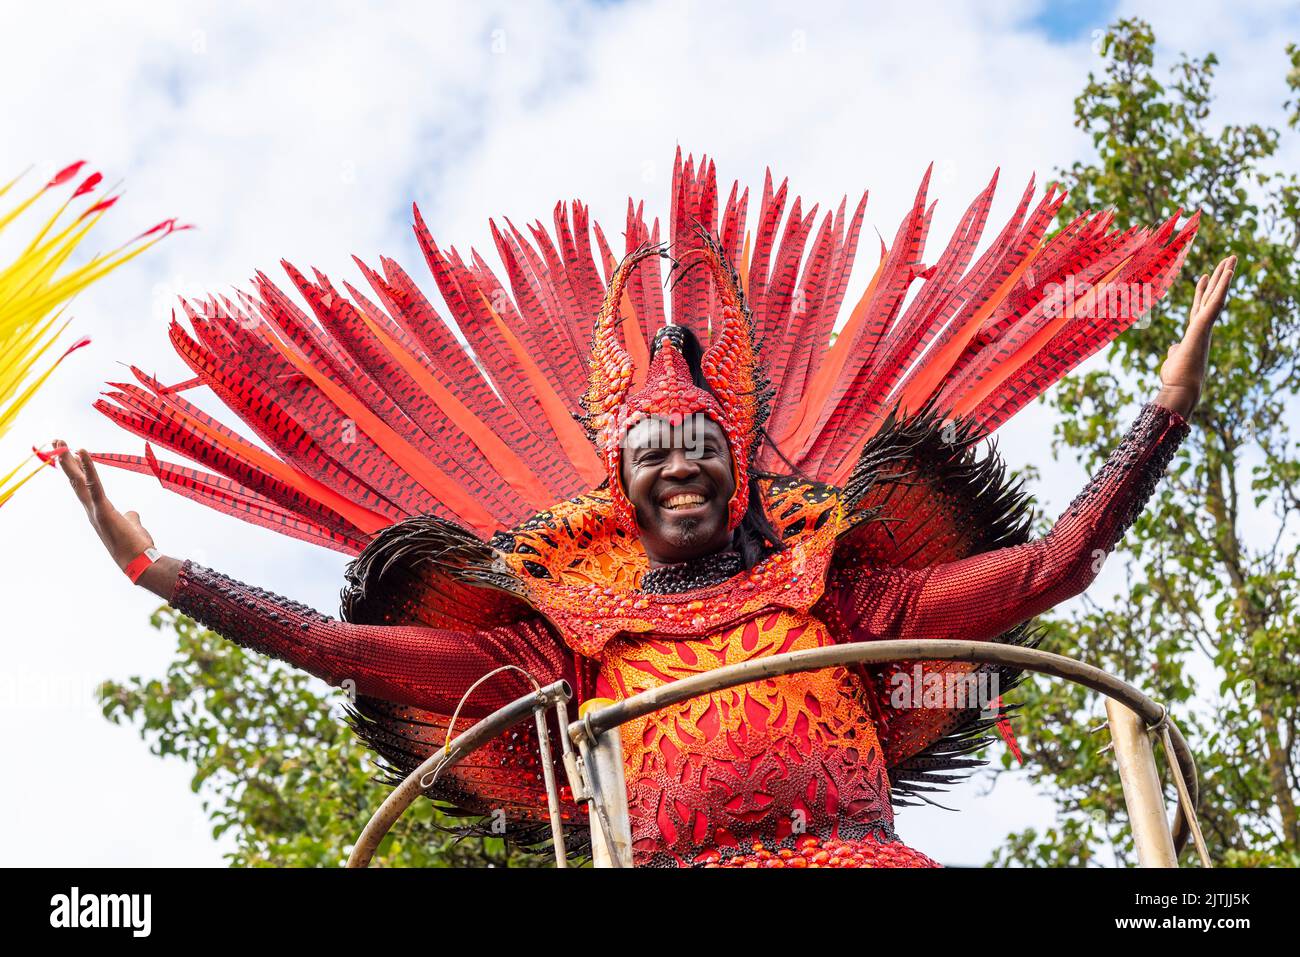 Notting Hill Carnival Grand Parade, le lundi 2022 août, jour férié à Londres, Royaume-Uni. Paraiso School of Samba participant masculin coloré Banque D'Images